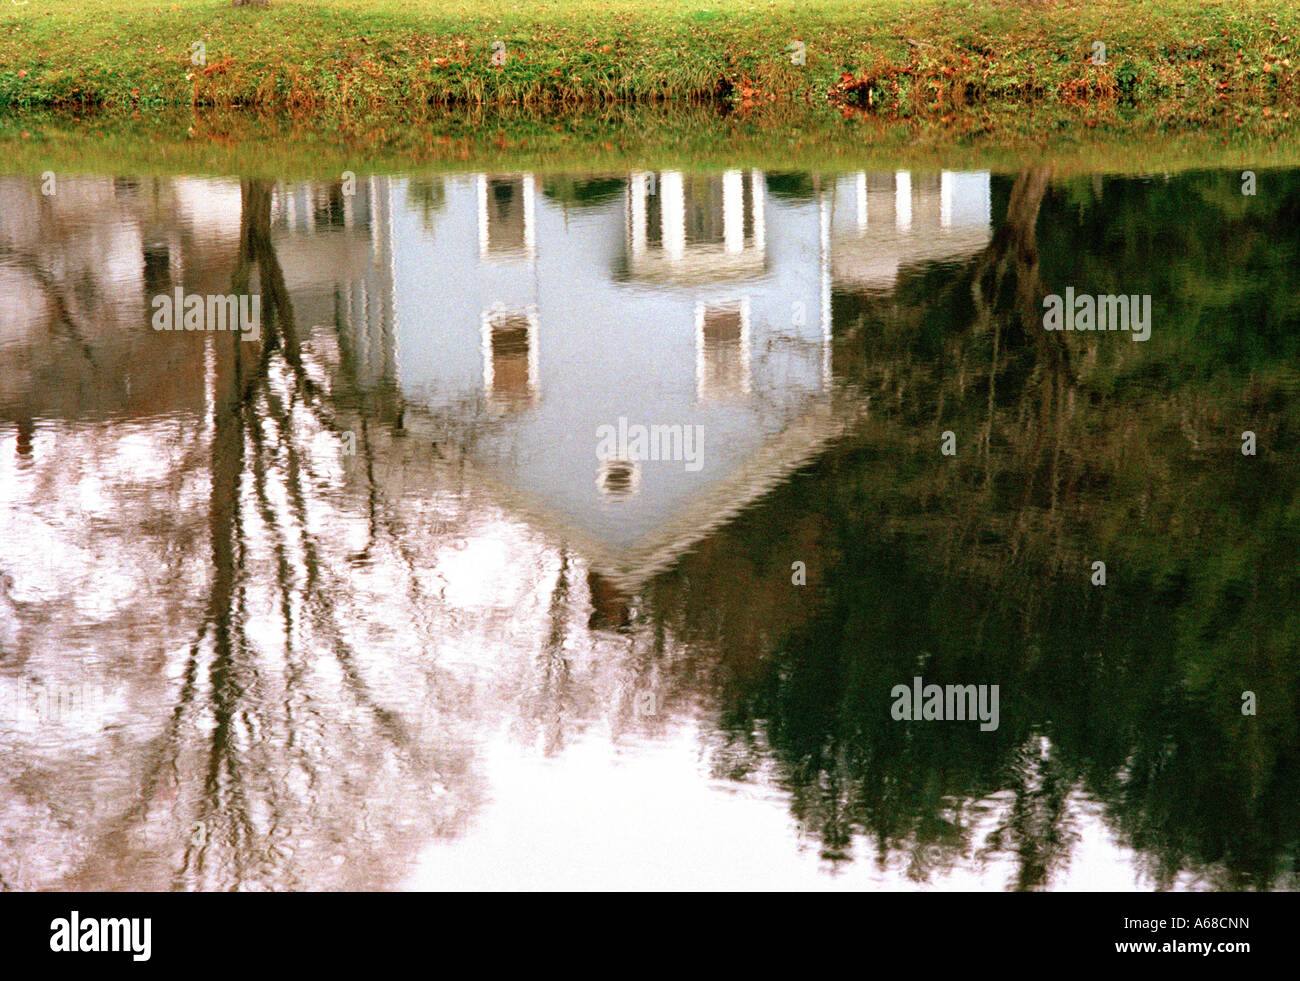 Reflexion der hölzerne Klappe Haus im Wasser eines Sees, New England. Lakeville, Connecticut, USA. Stockfoto